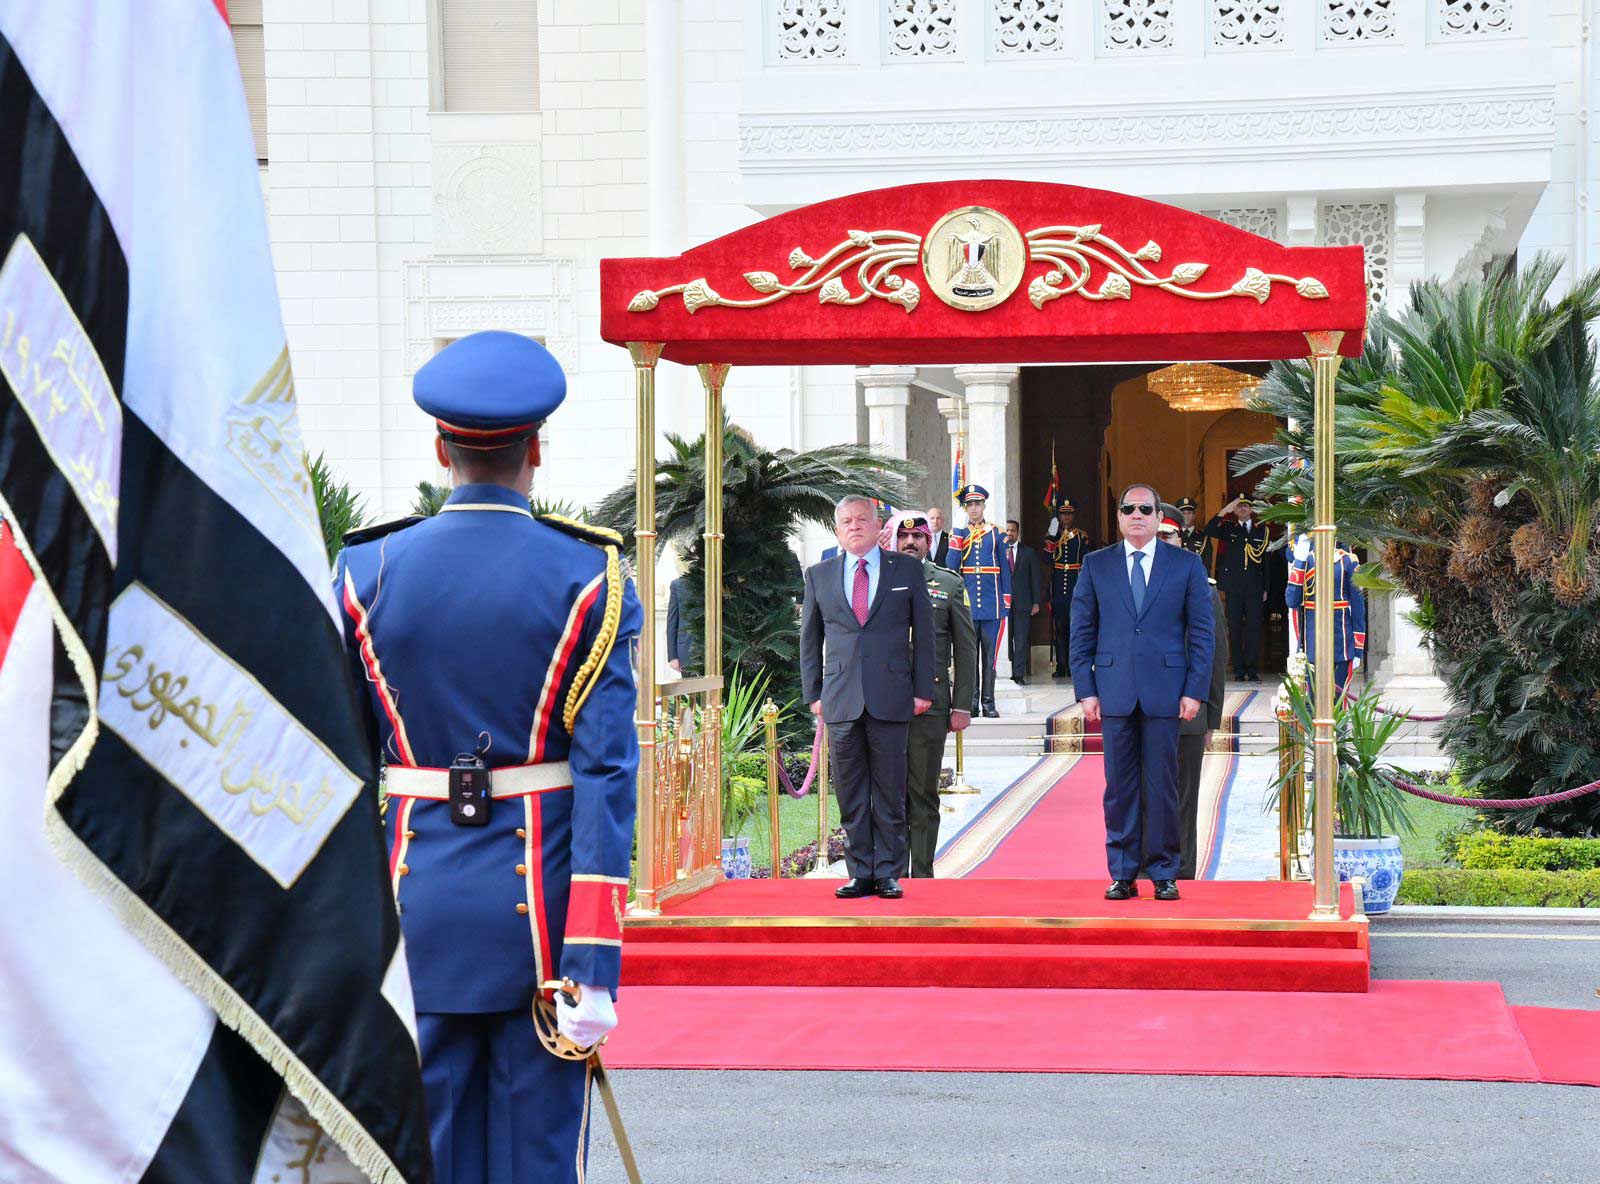   صور استقبال الرئيس السيسي للعاهل الأردني مباحثاتهما بقصر الاتحادية